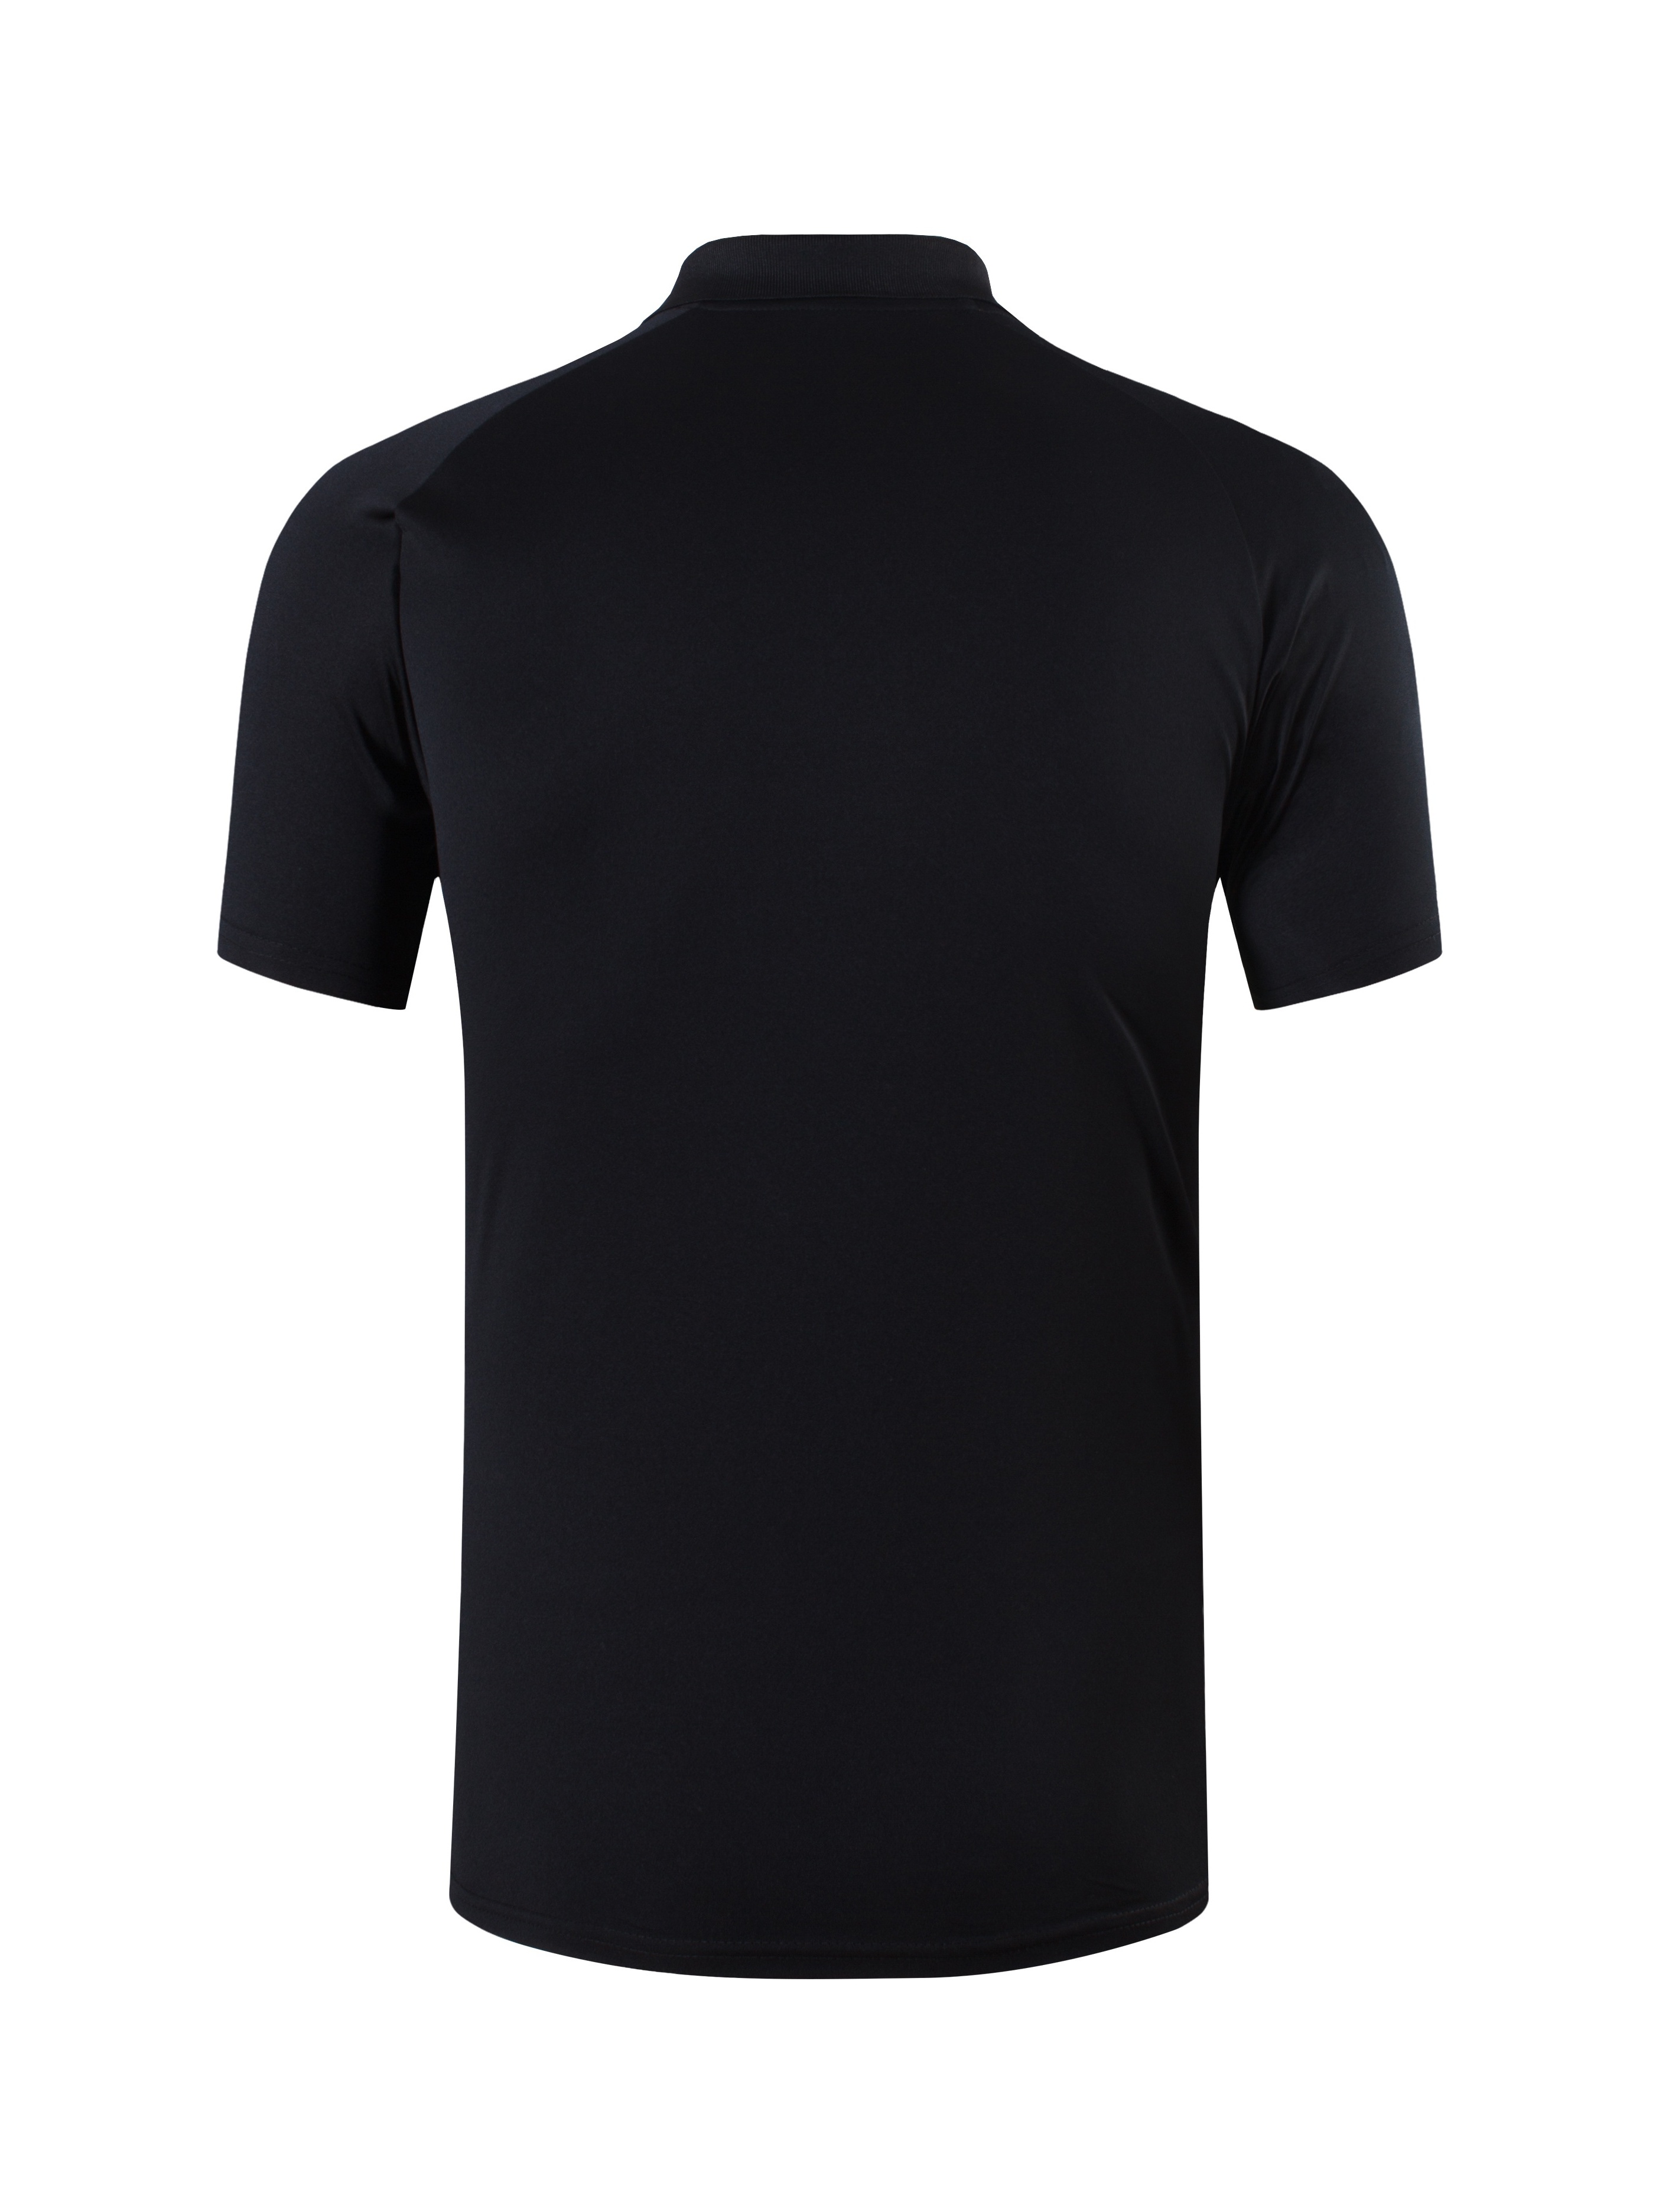 Camiseta deportiva de manga corta para hombre, camisetas deportivas,  camisetas para correr, golf, tenis, bolos, correr, LSL133